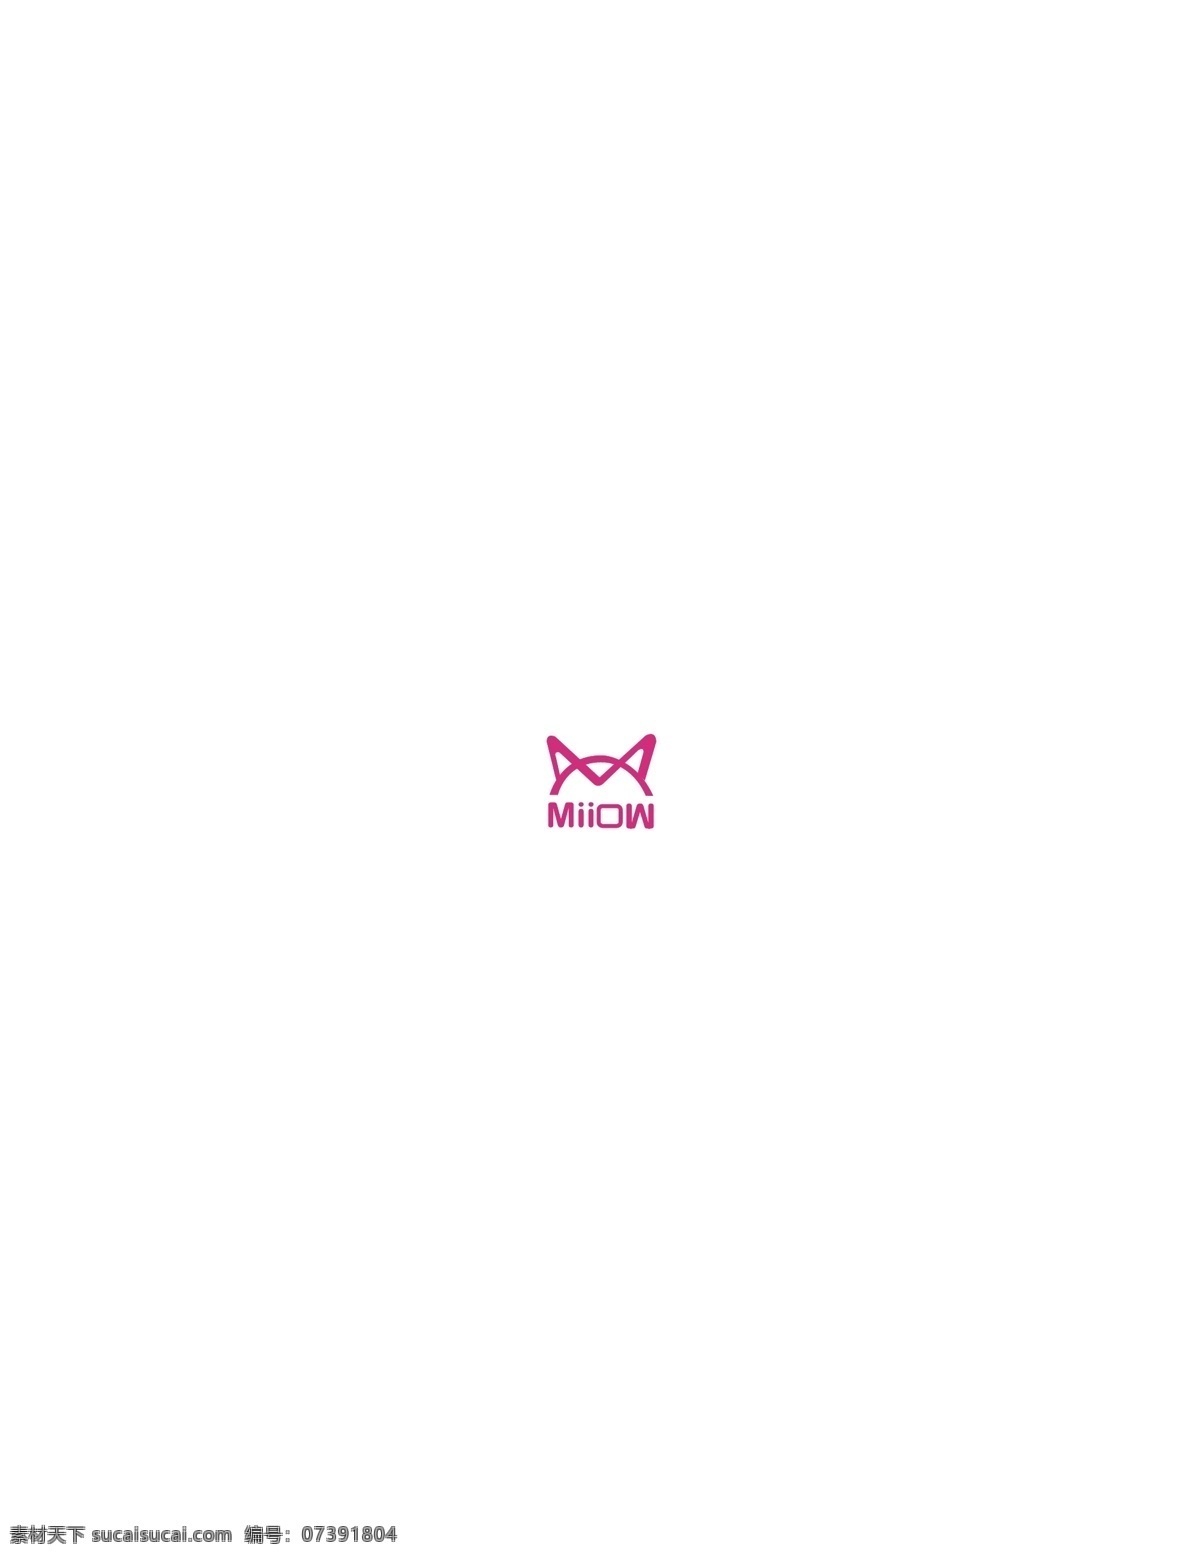 猫 人 内衣 logo 猫人内衣 logo标志 内衣品牌 猫人内衣标志 logo设计